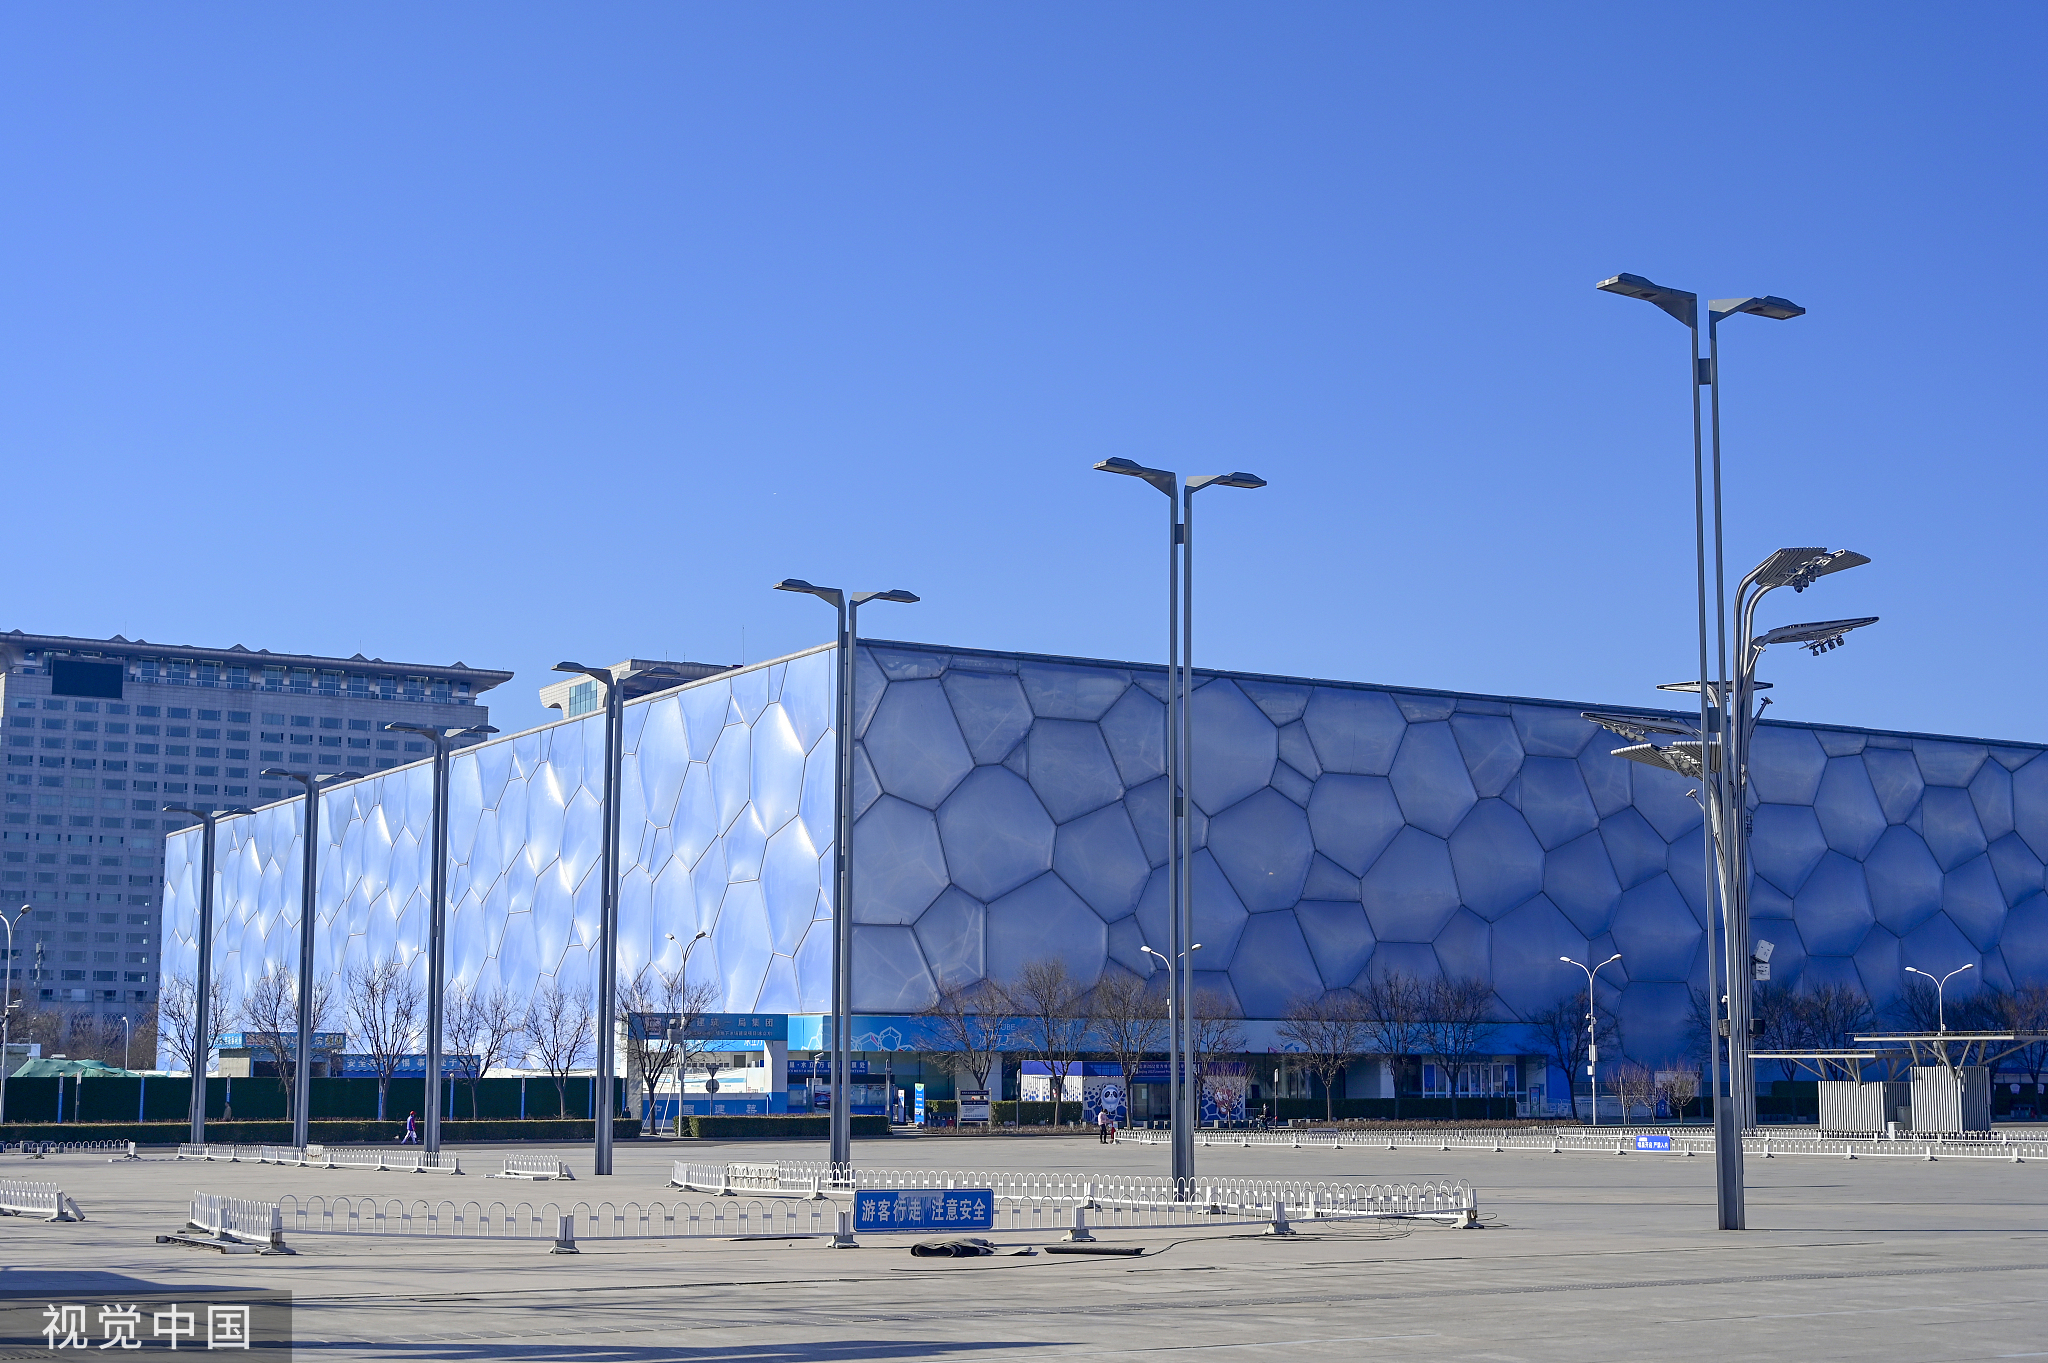 水立方变冰立方2008年奥运会体育场馆将跨越时空助力冬奥会